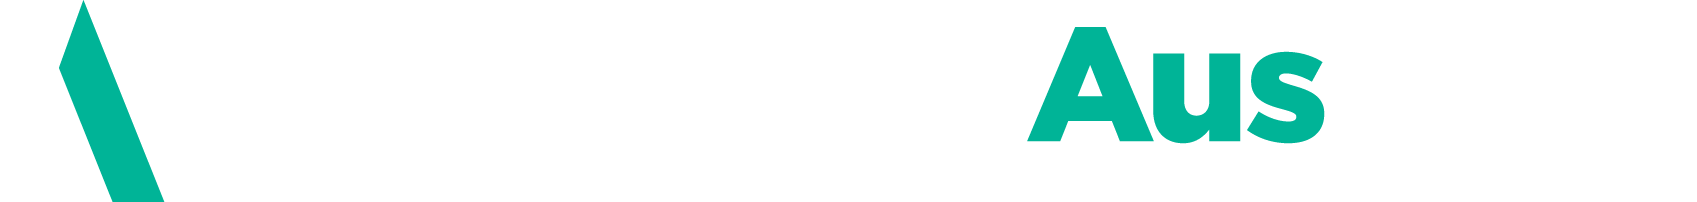 InnovationAus.com